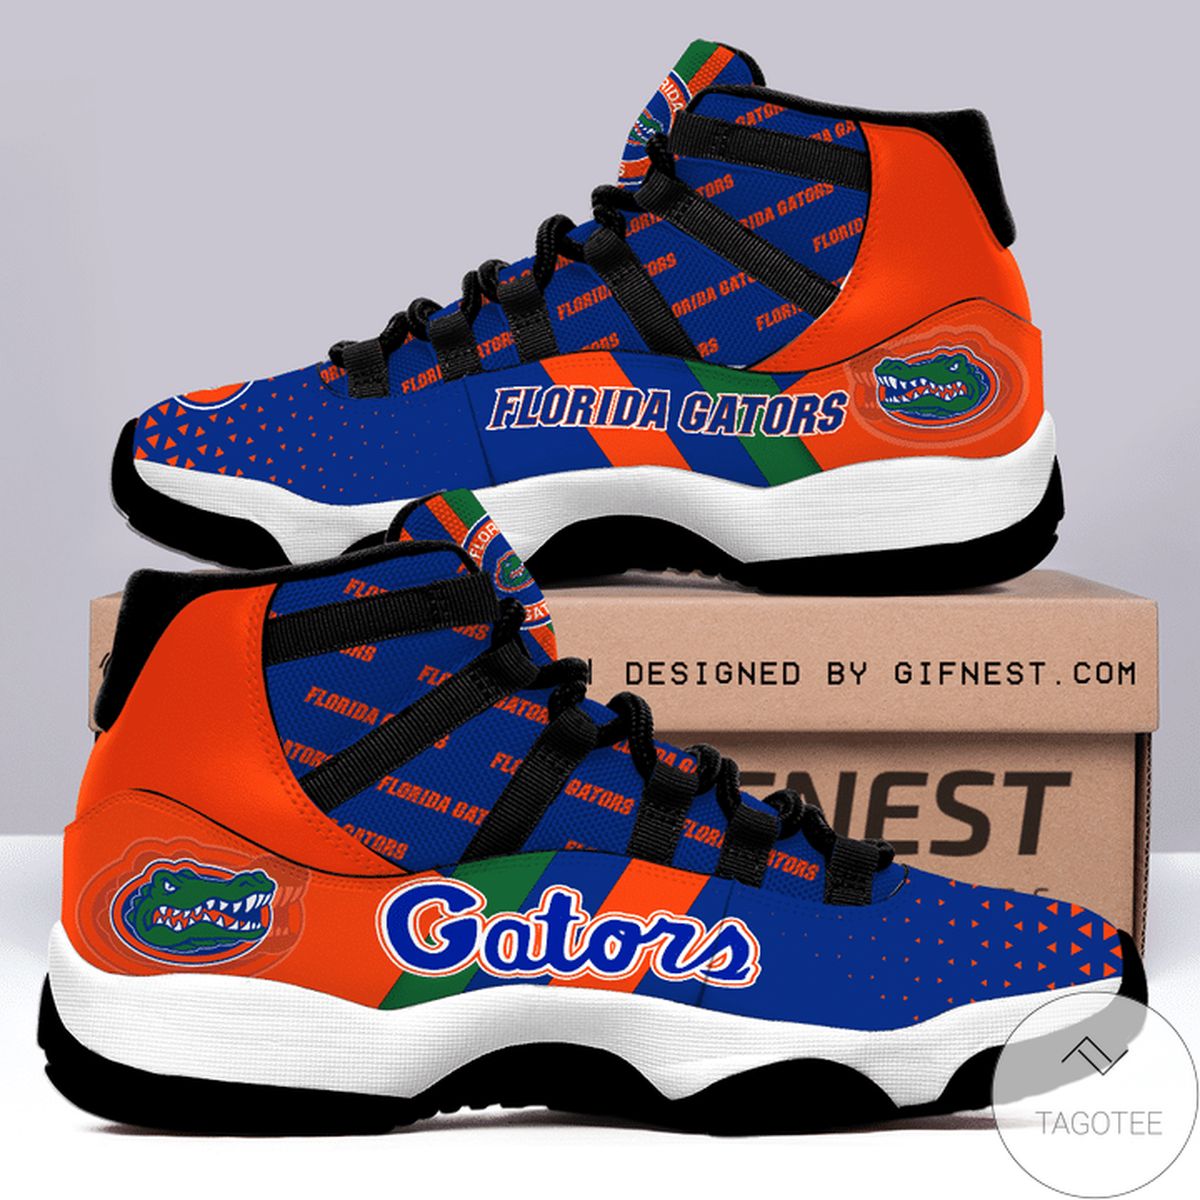 Florida Gators Air Jordan 11 Shoes